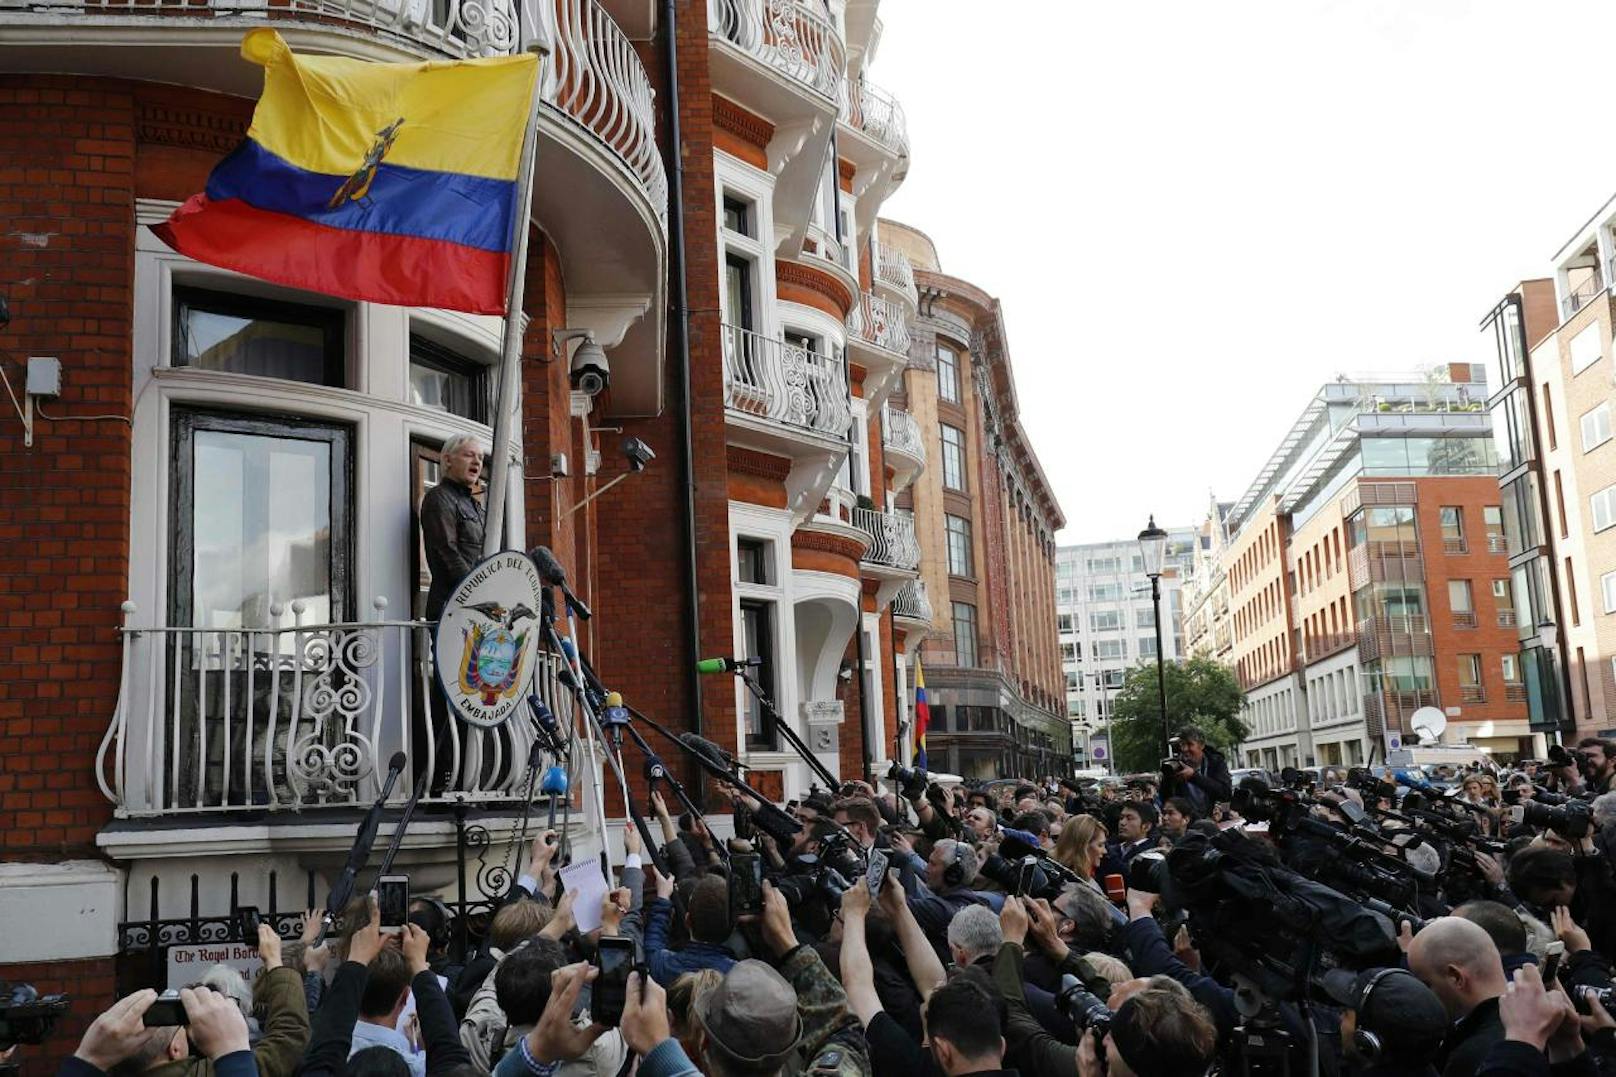 Die britischen Behörden wollen Assange festnehmen, weil er durch seine Flucht in die Botschaft Kautionsauflagen verletzt habe.